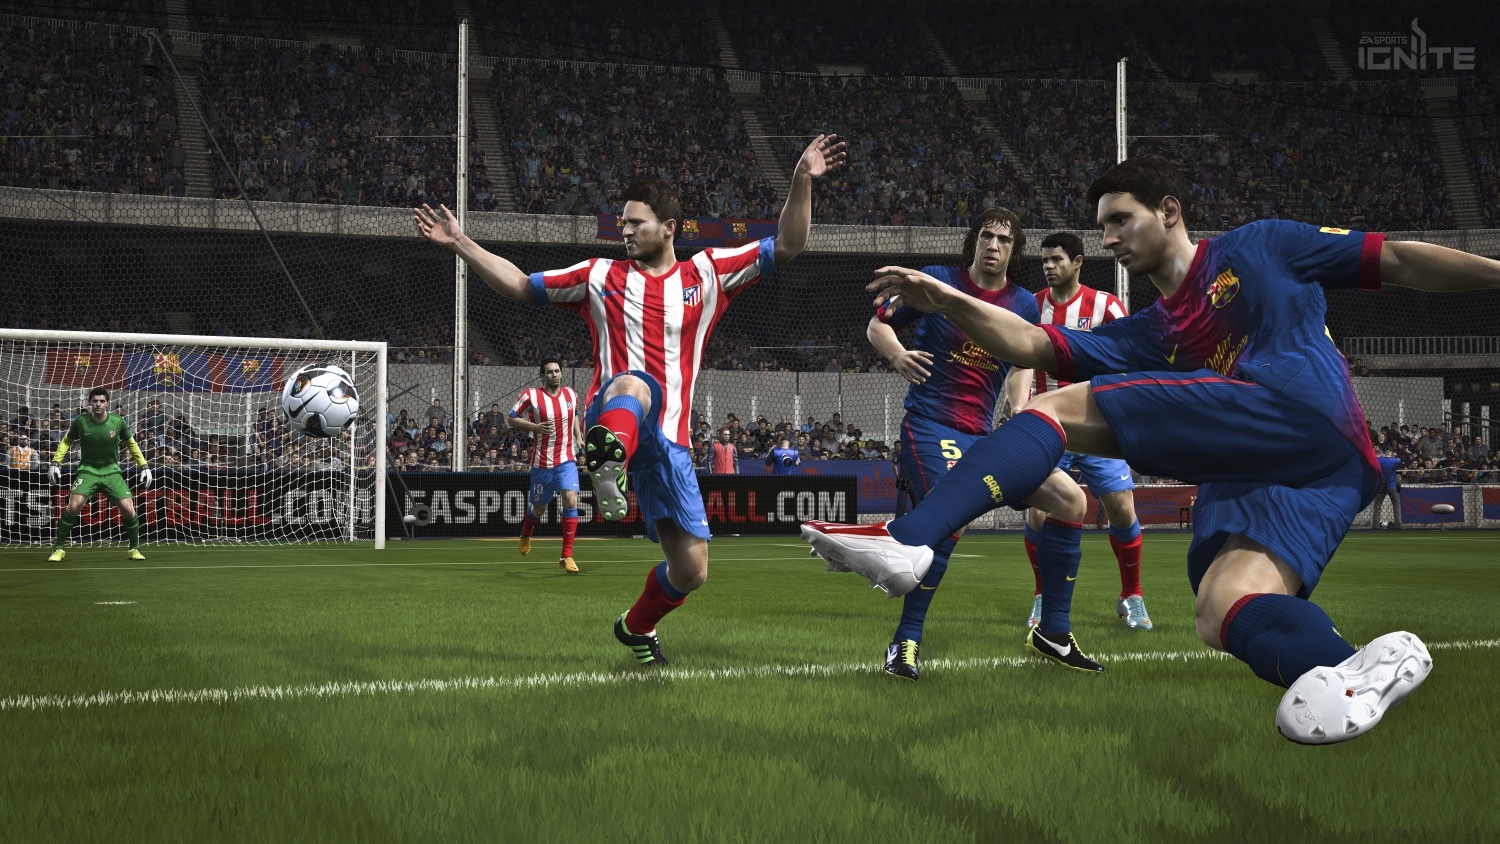 Nhờ engine Ignite, FIFA 15 sẽ đẹp nhất khi chơi trên PC